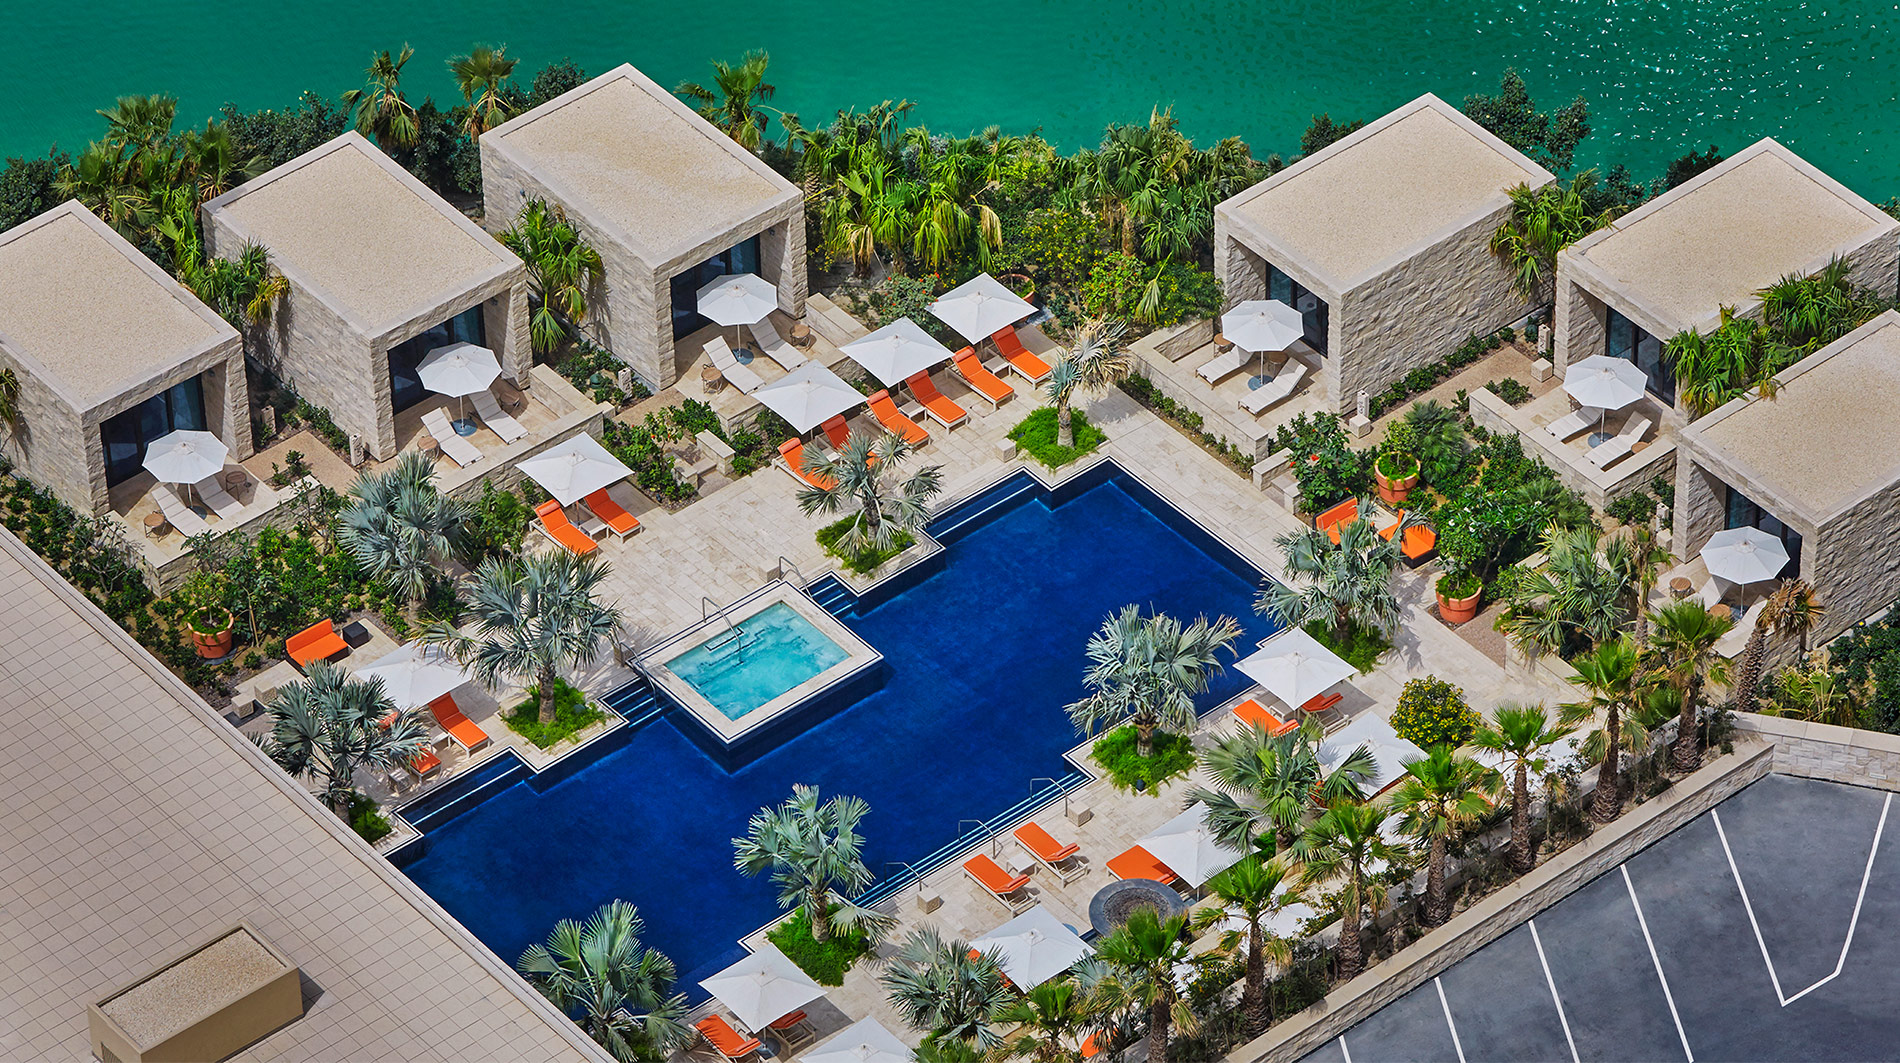 Four Seasons Hotel Bahrain Bay Bahrain Hotels Manama Bahrain Forbes Travel Guide